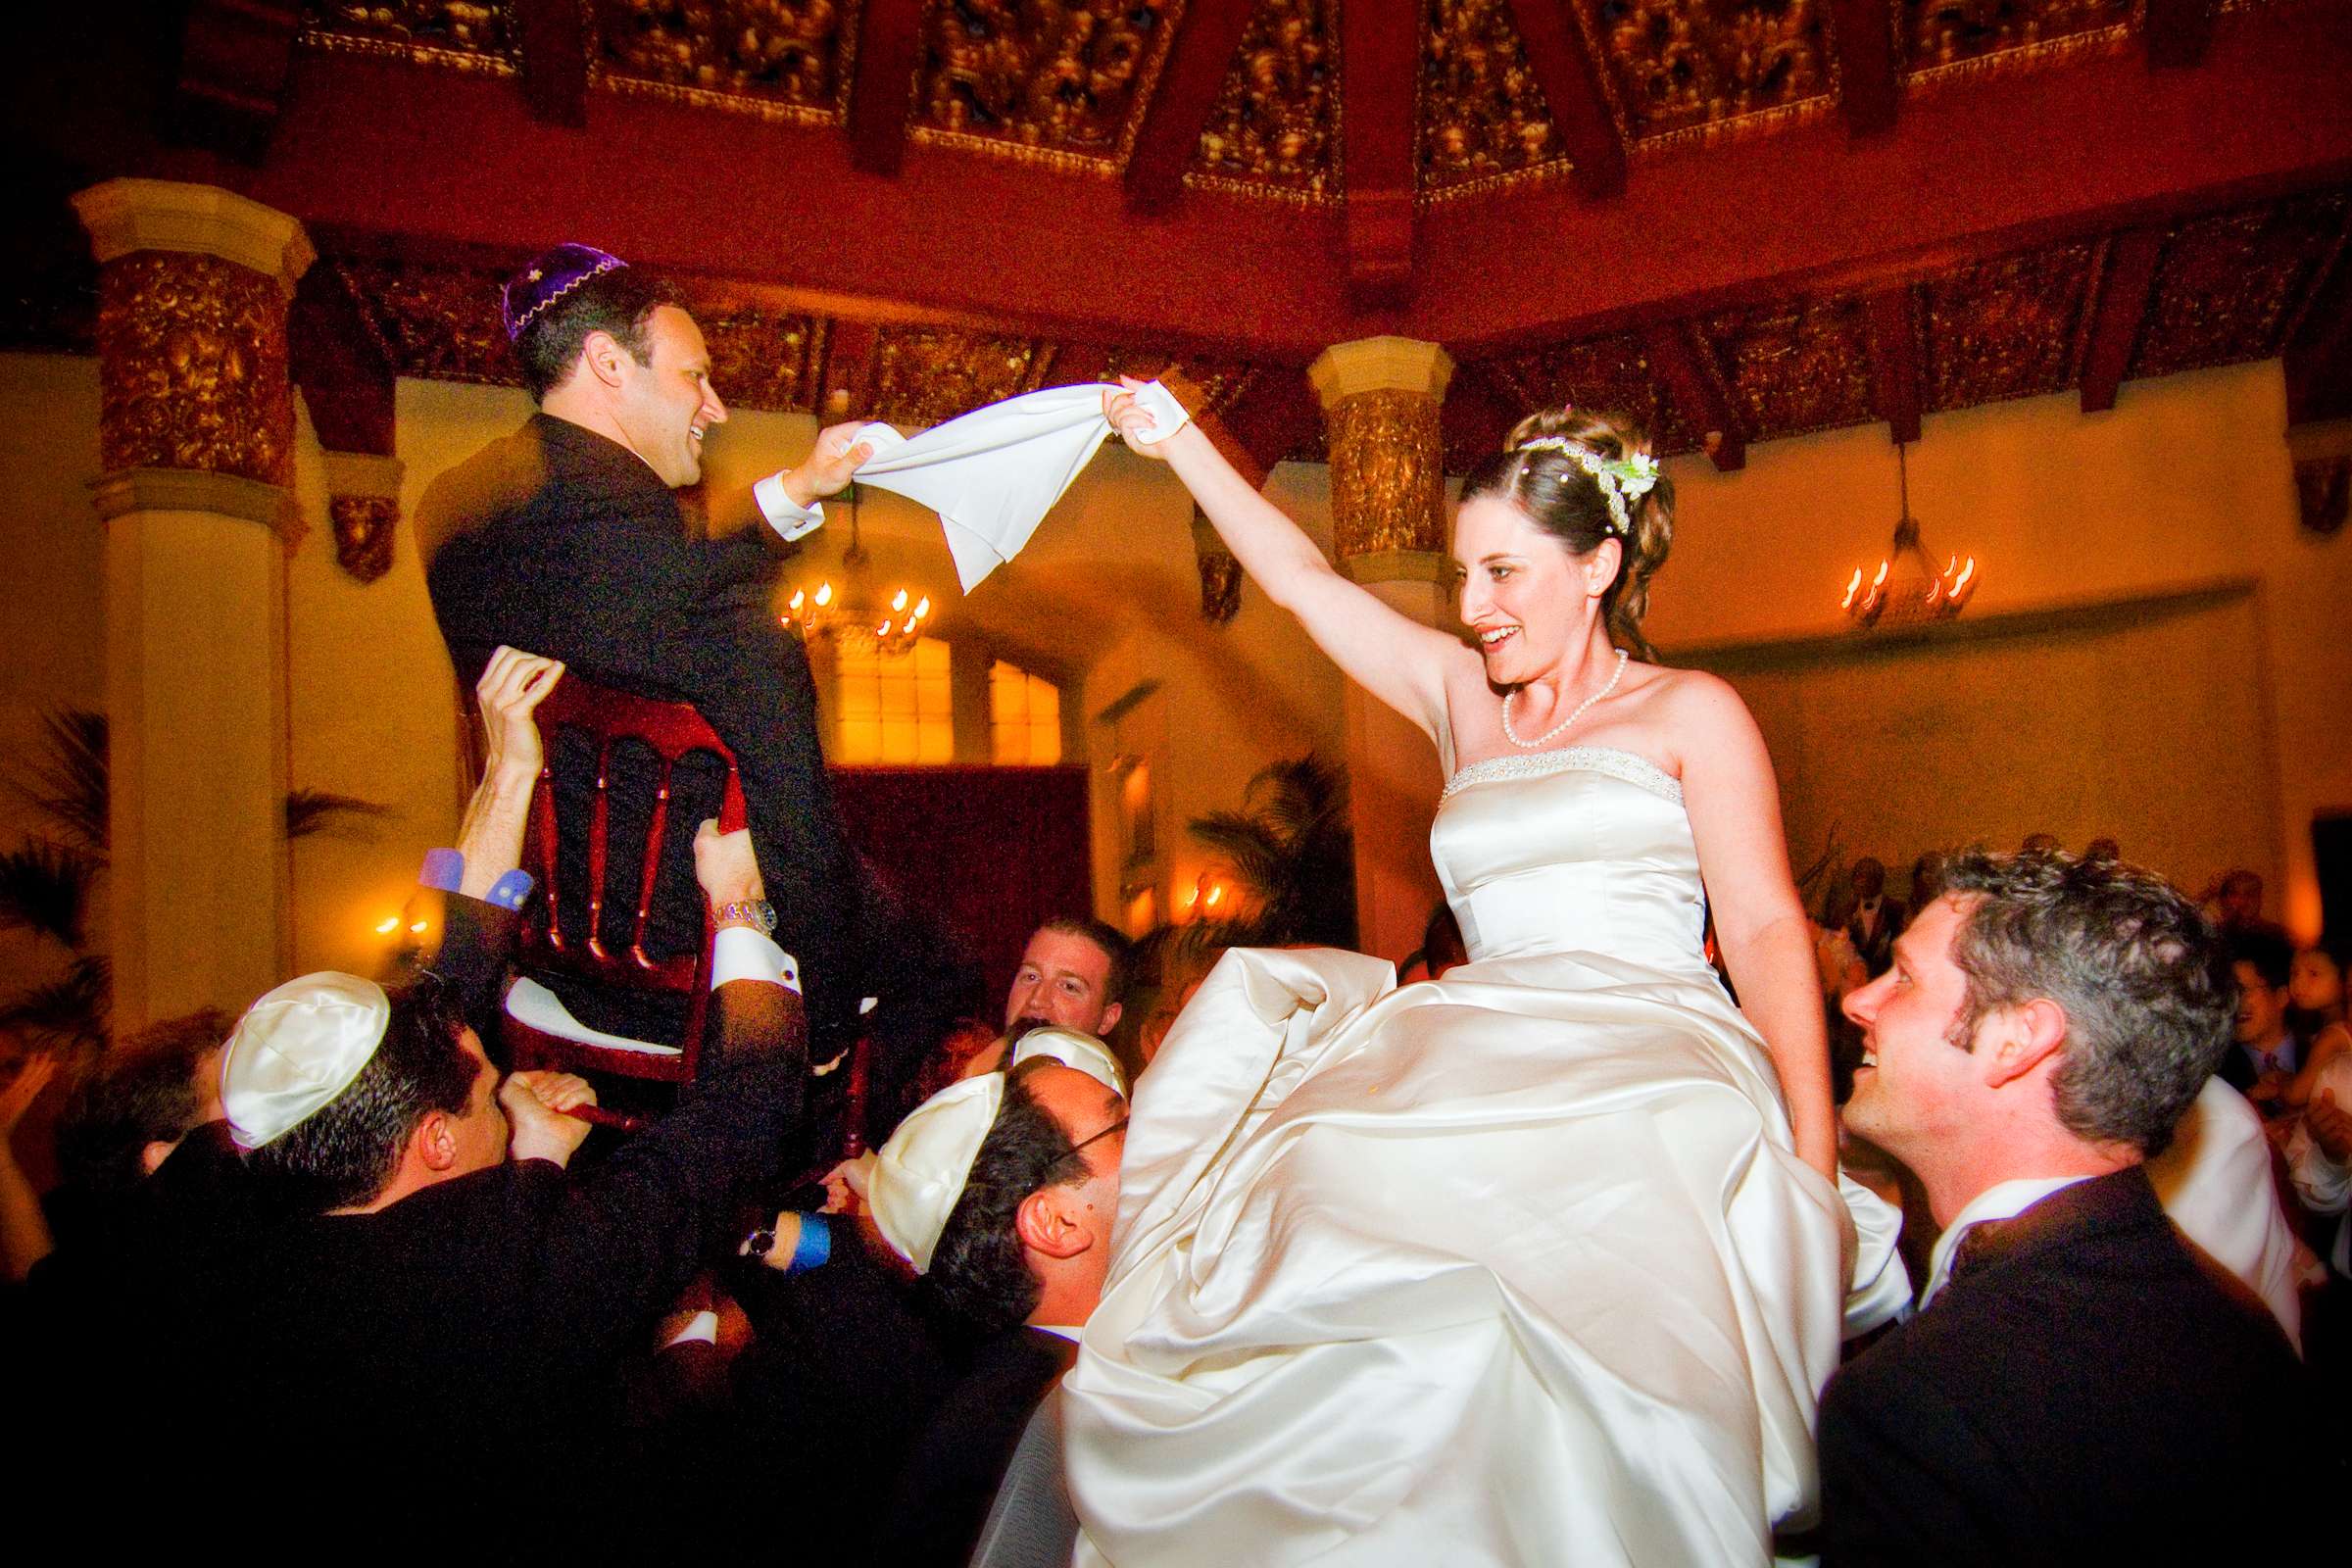 El Cortez Wedding, Laura and David Wedding Photo #22 by True Photography